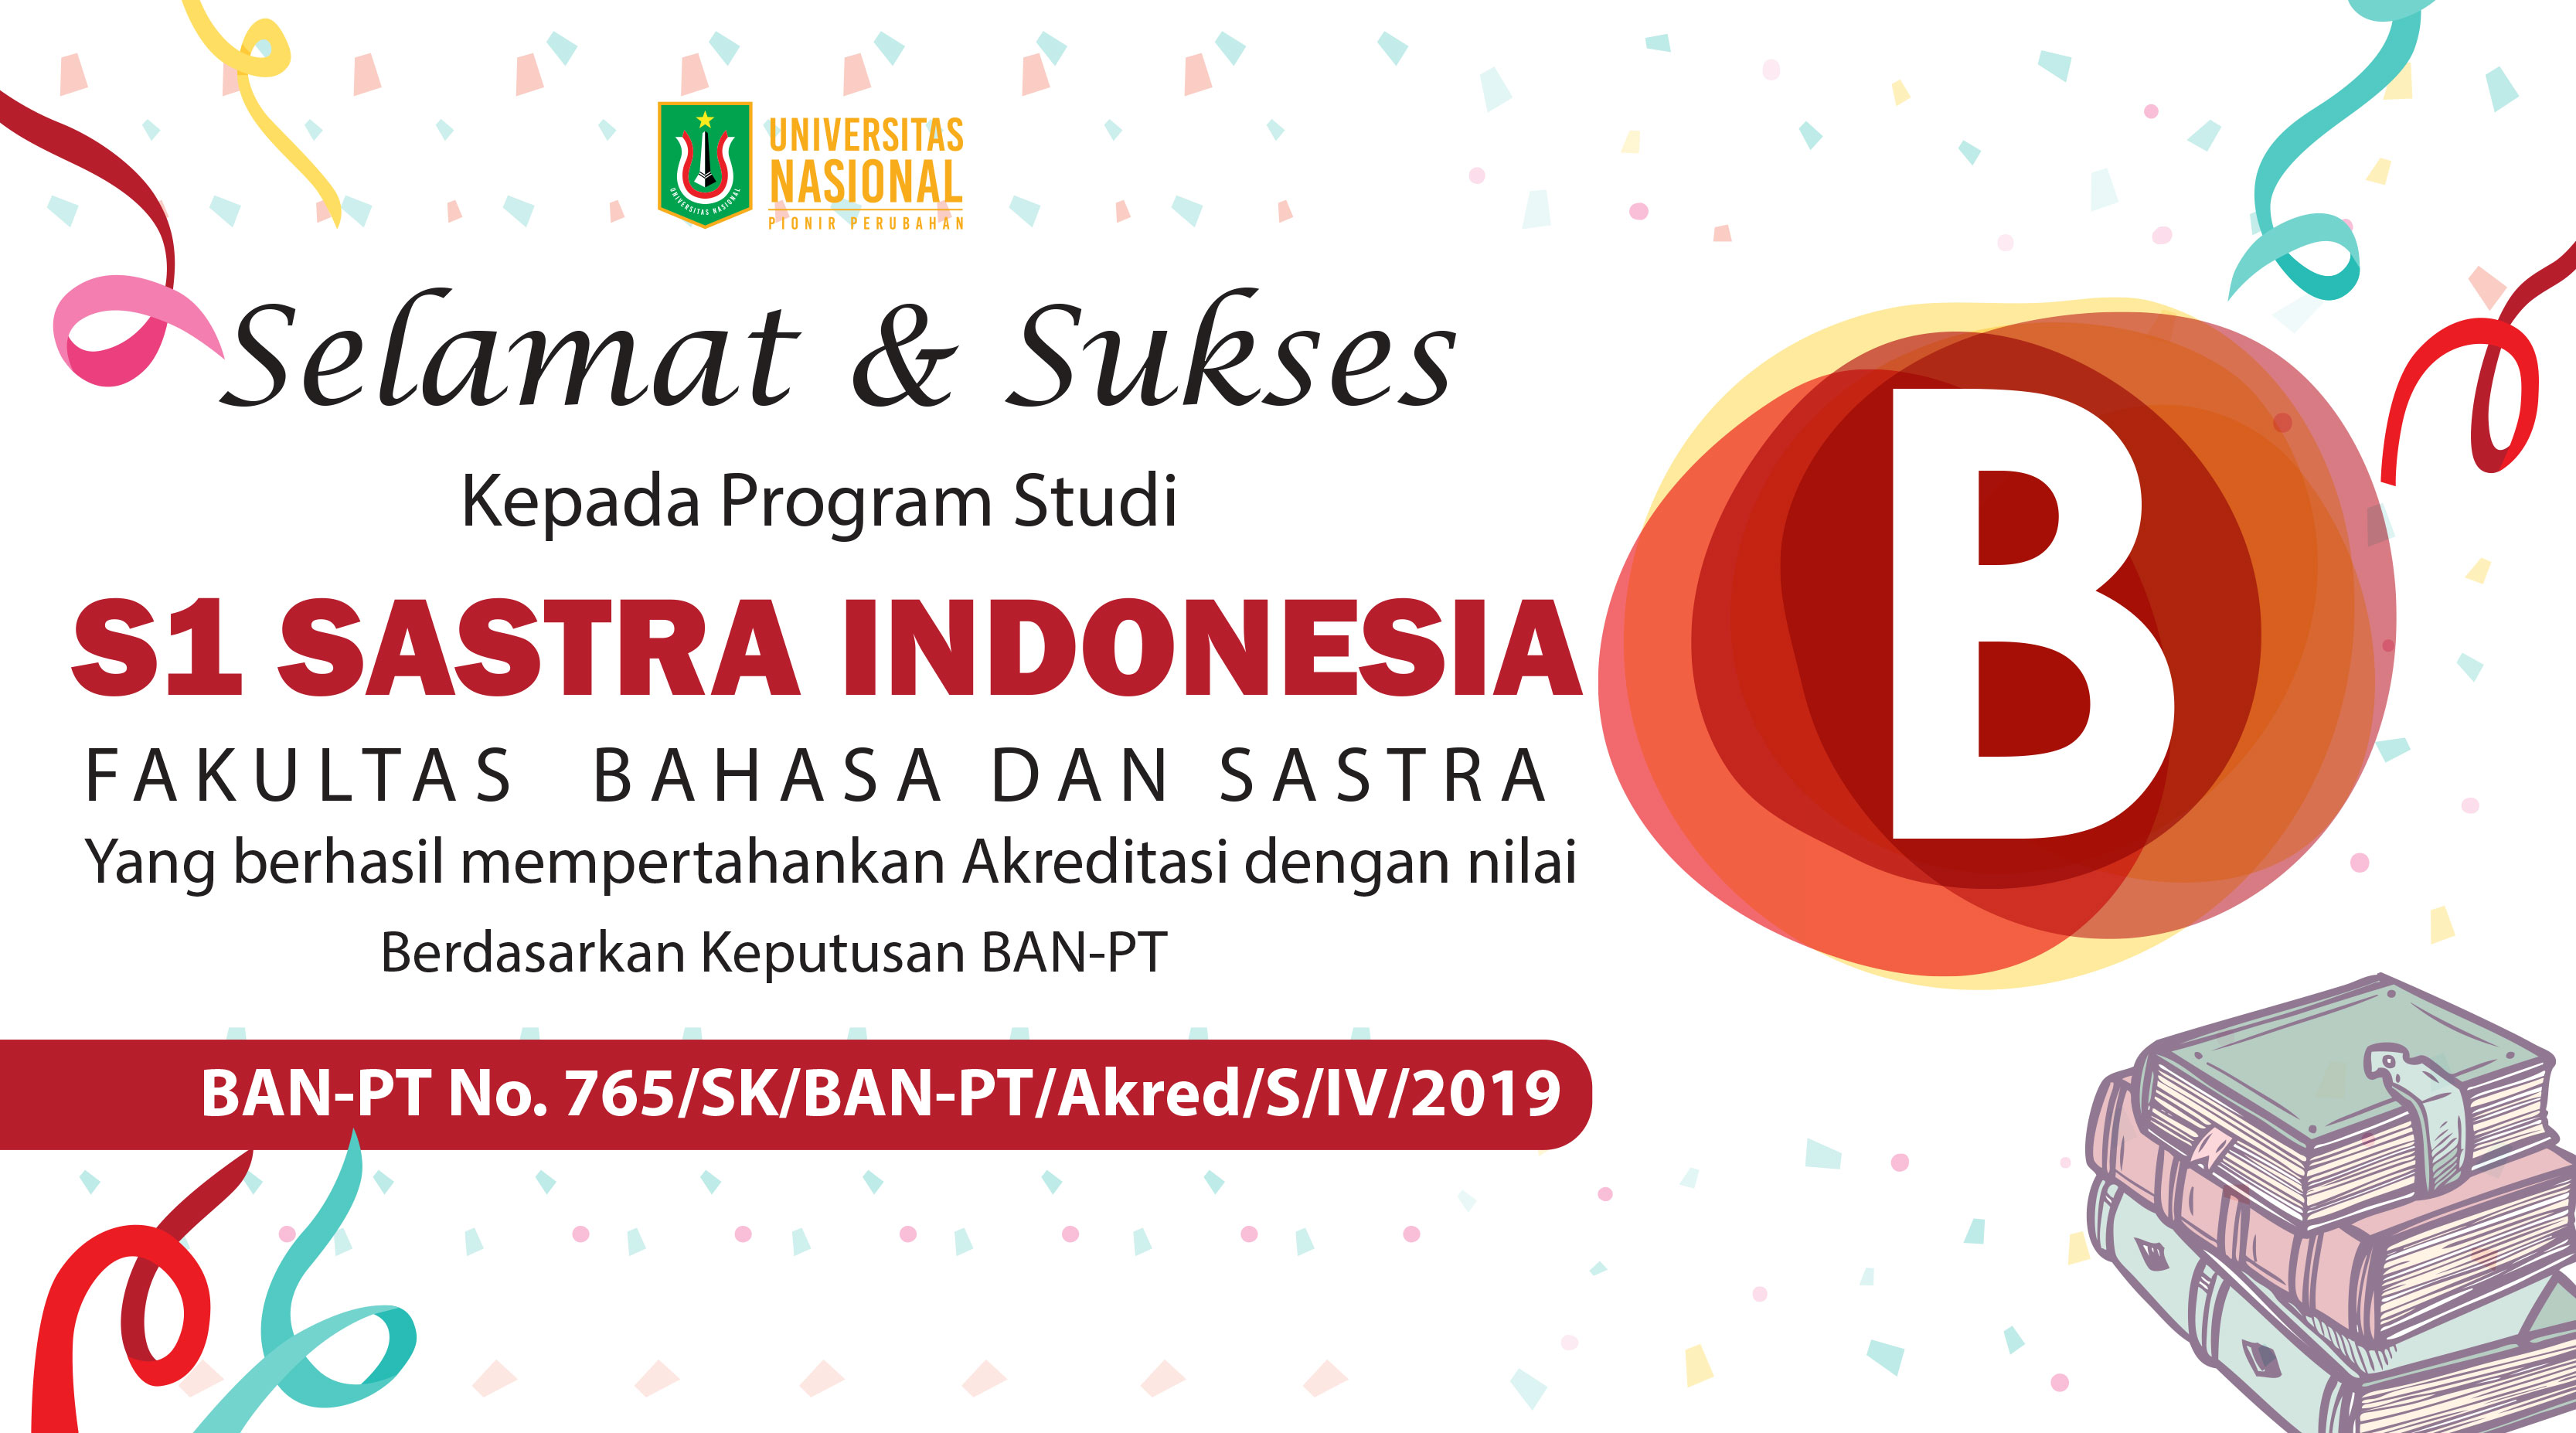 S1 Sastra Indonesia (Fakultas Bahasa & Sastra) berhasil mempertahankan Akreditasi dengan Nilai “B”